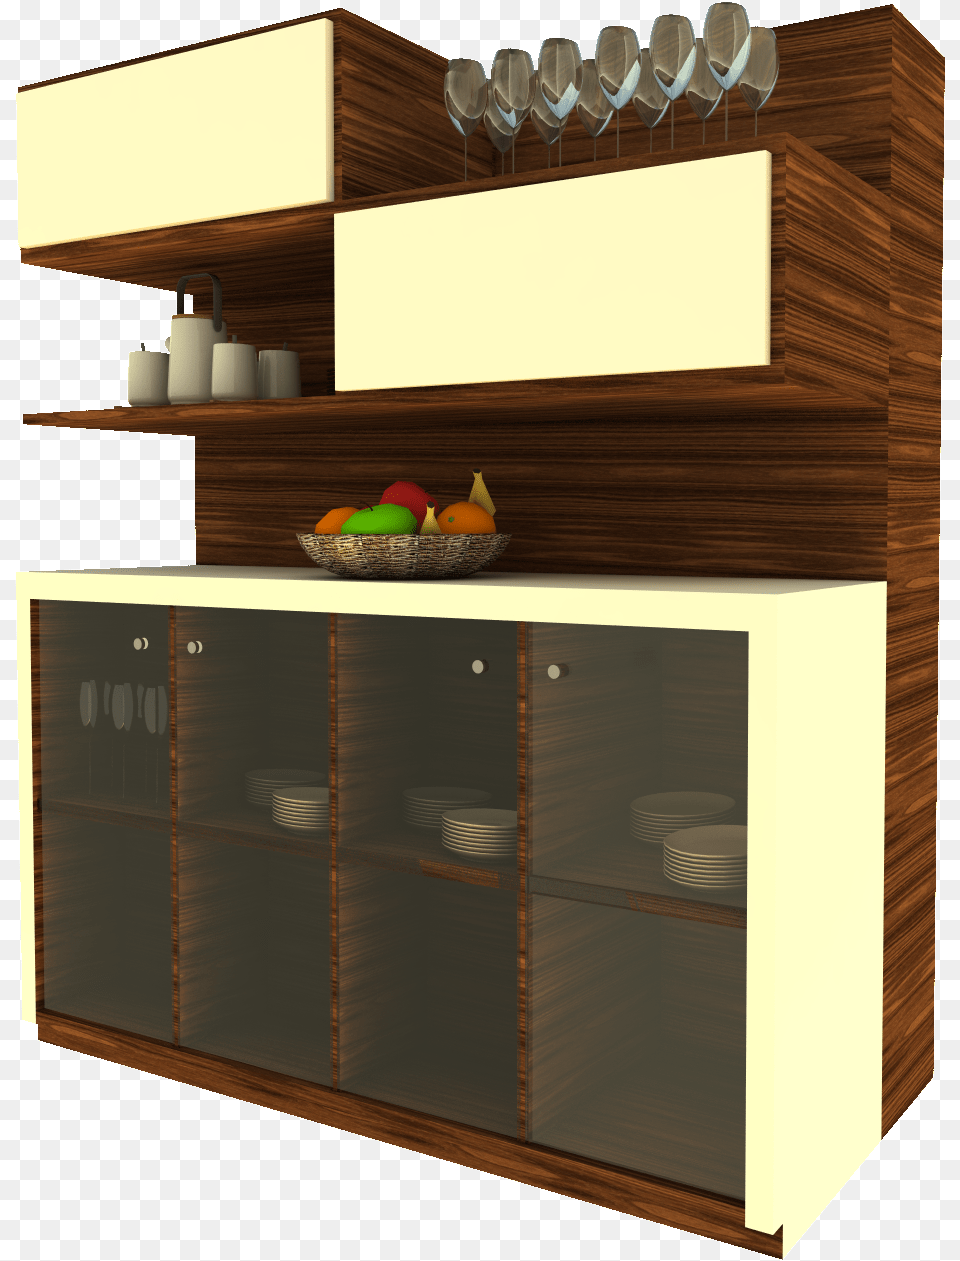 Bookcase, Cabinet, Furniture, Cupboard, Closet Png